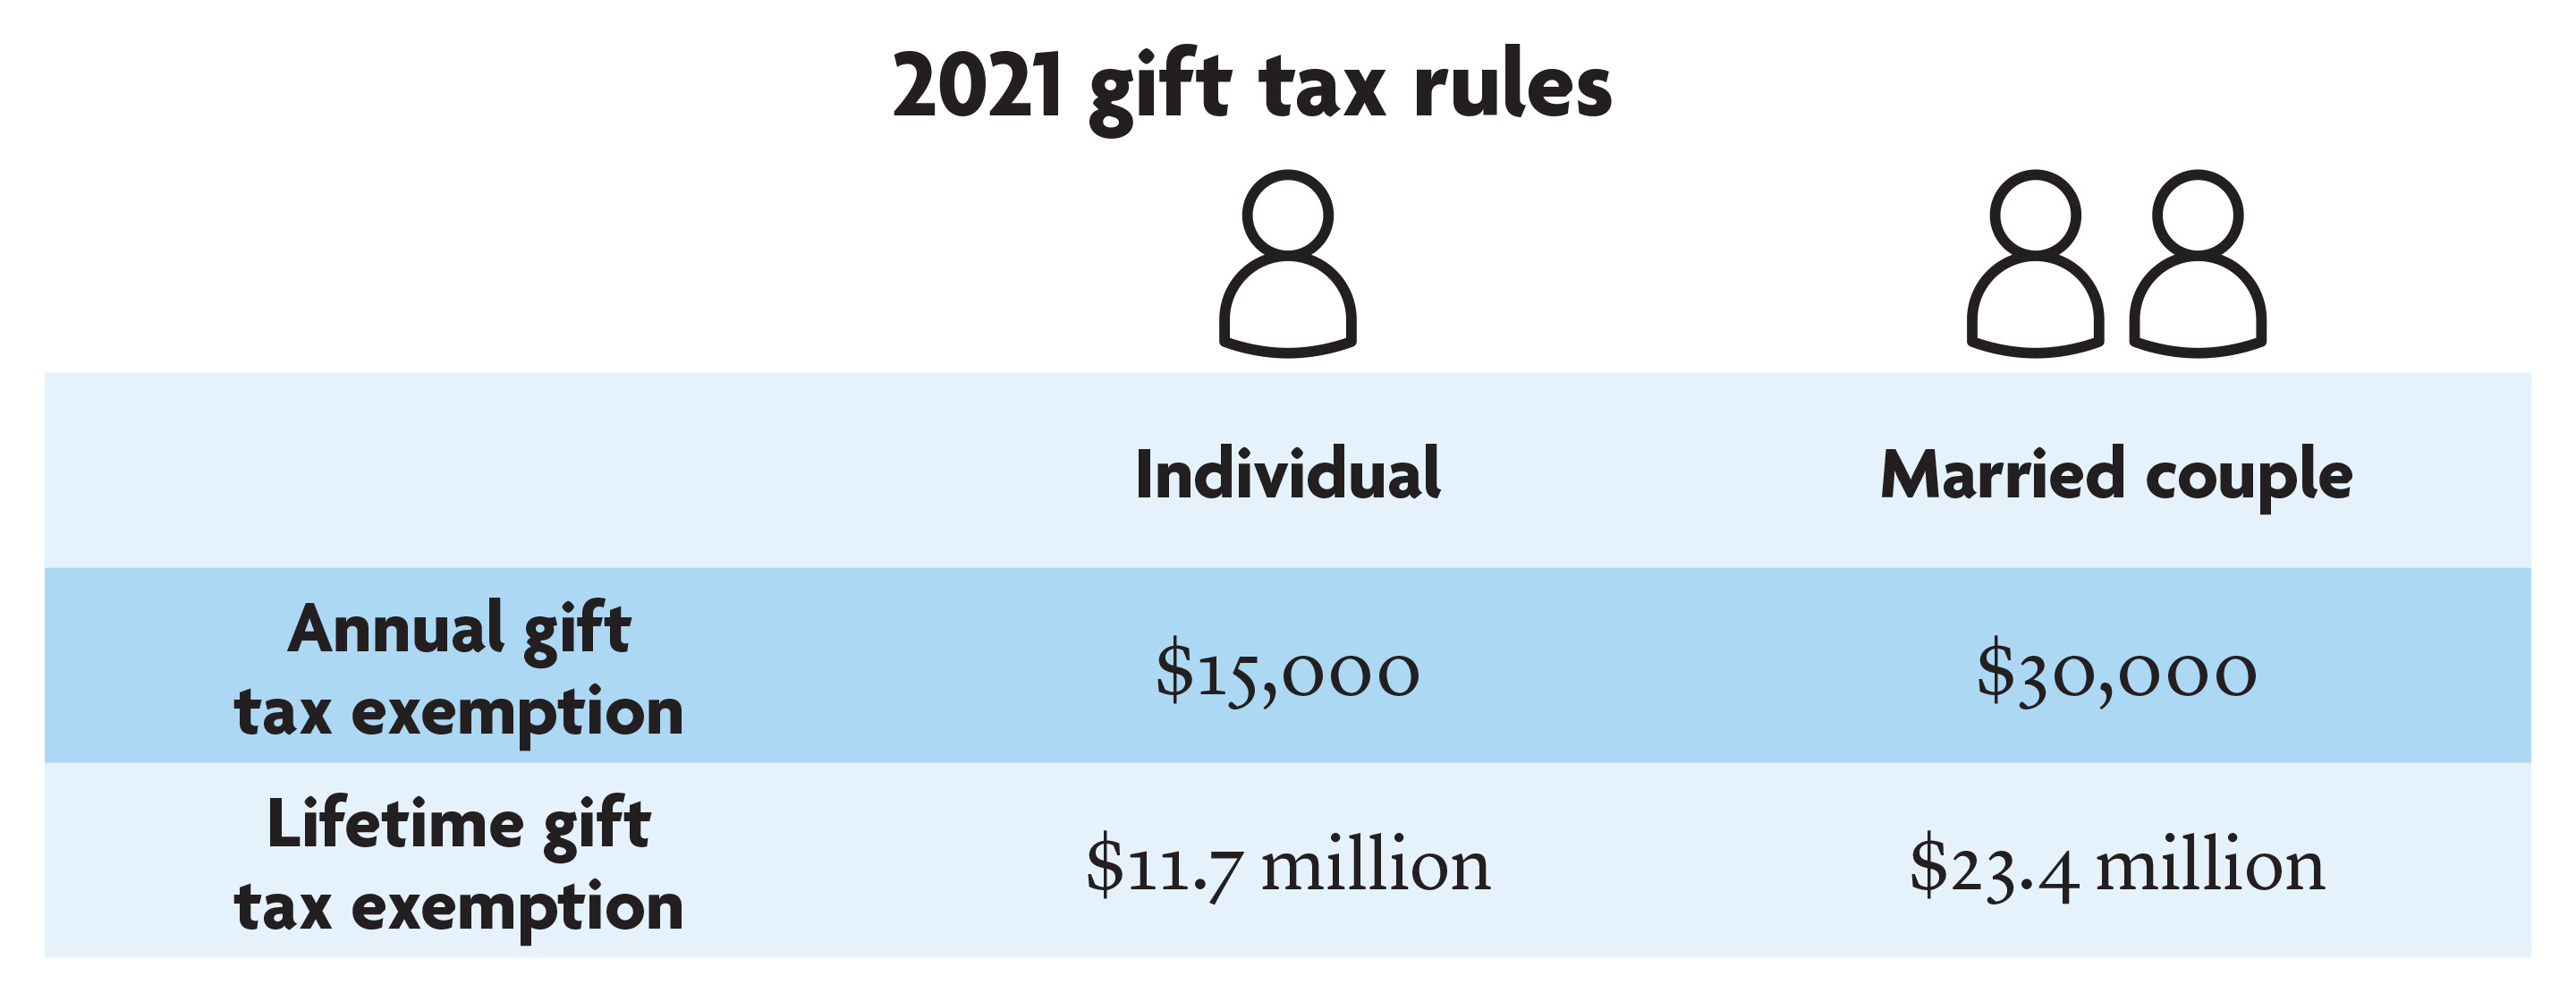 Tax rules